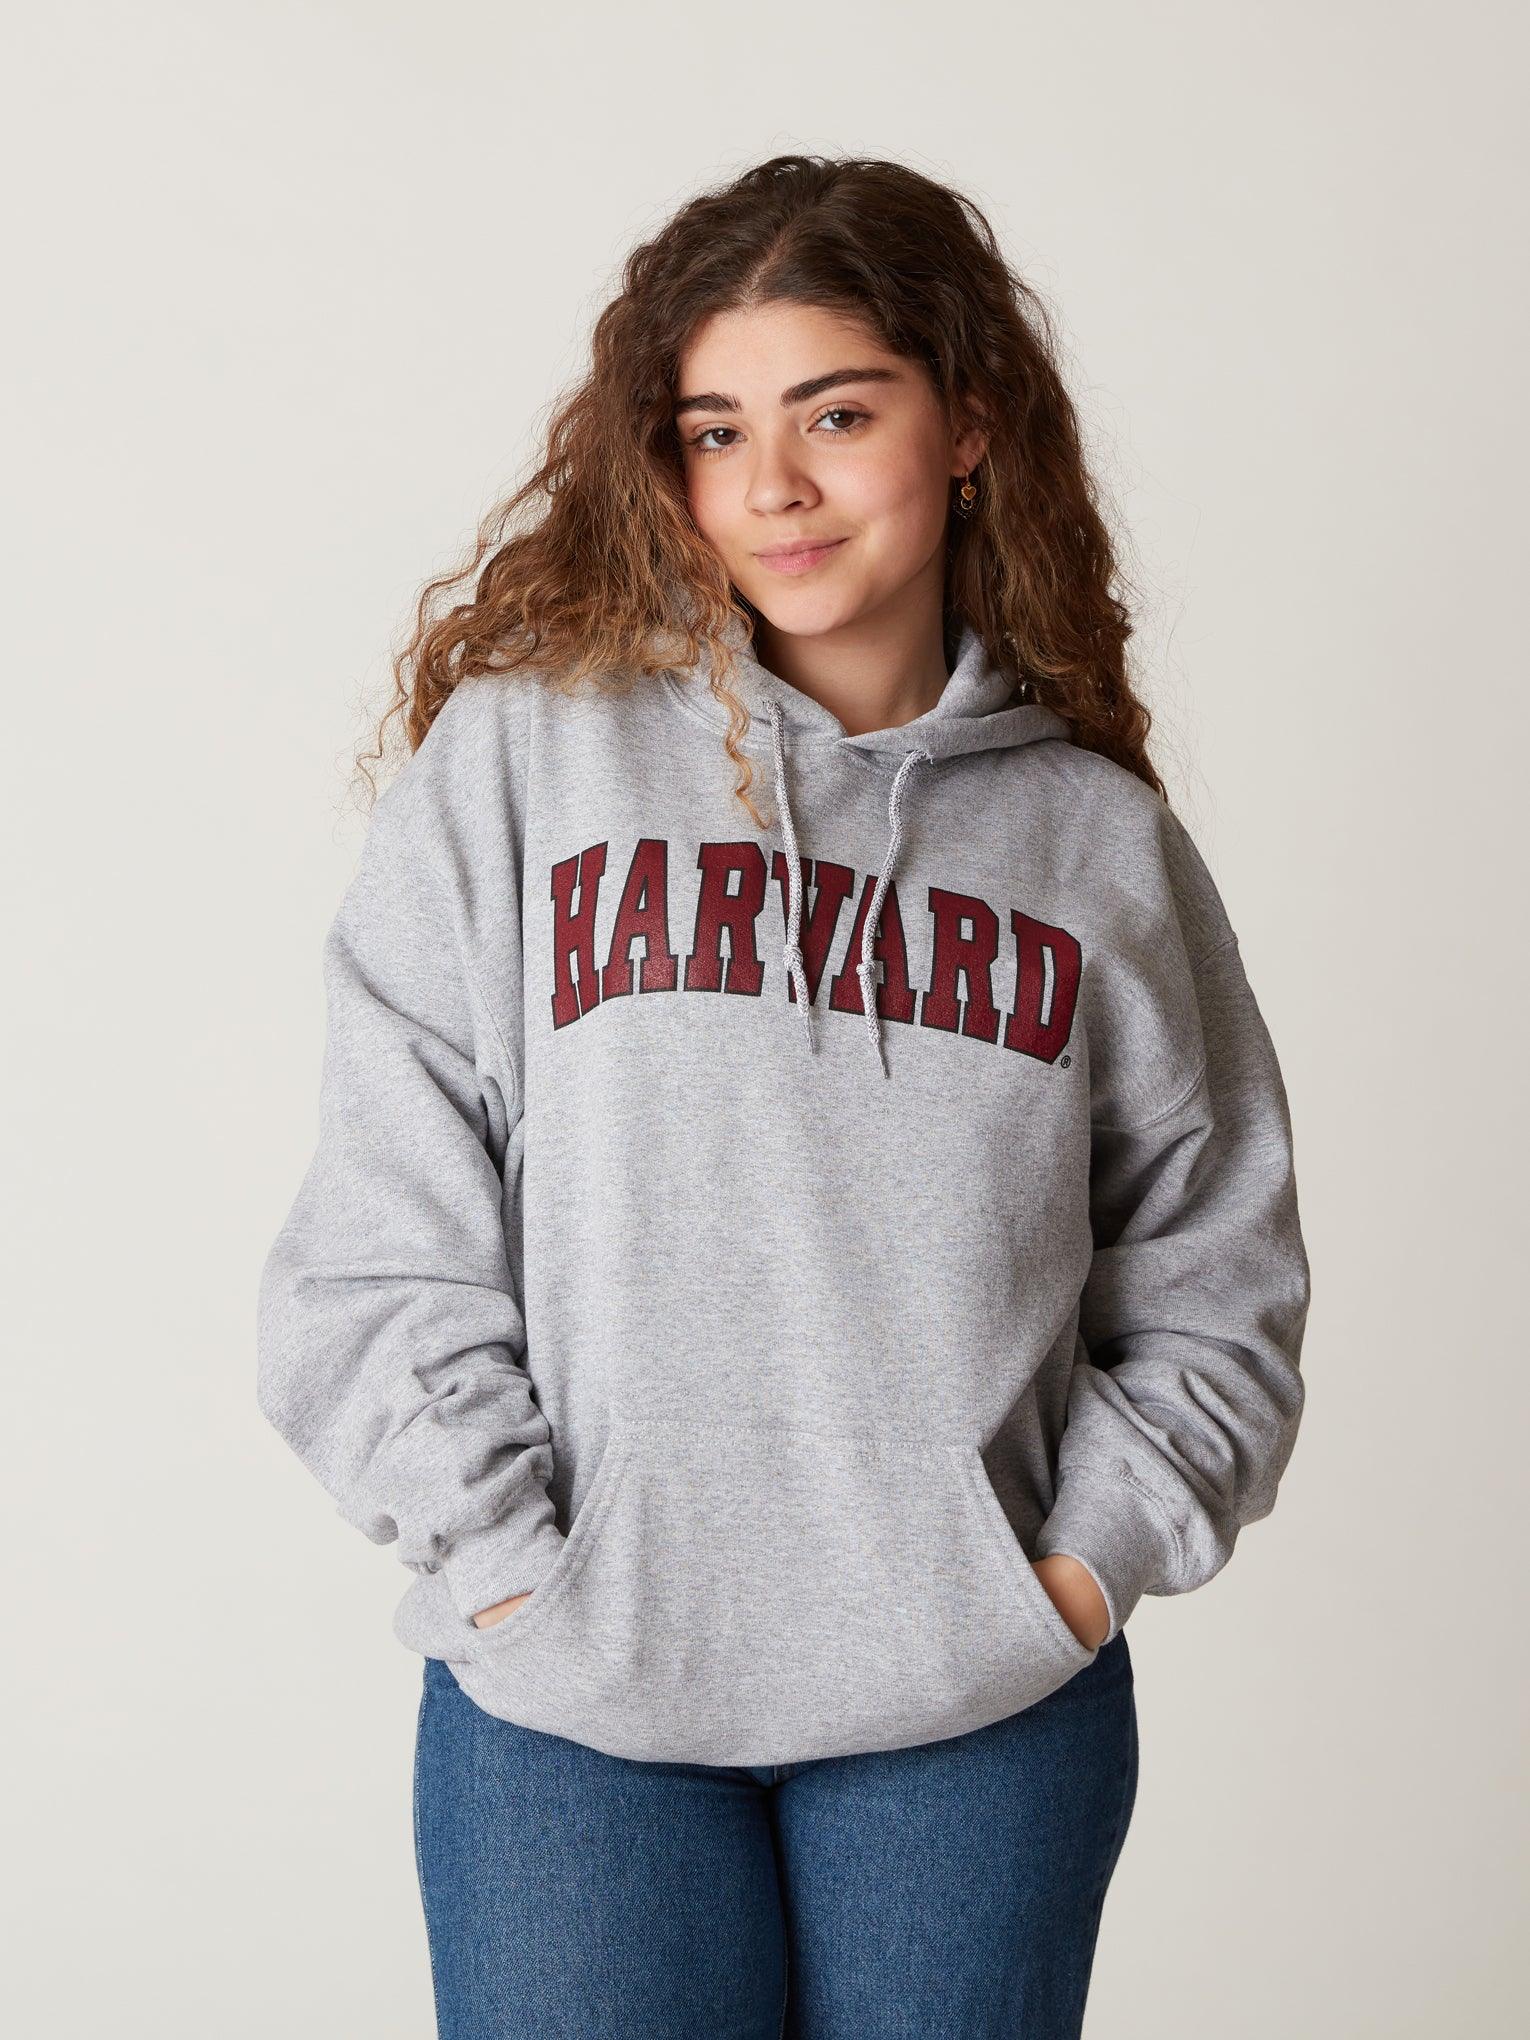 – The Shop Harvard Arc Hooded Harvard Sweatshirt